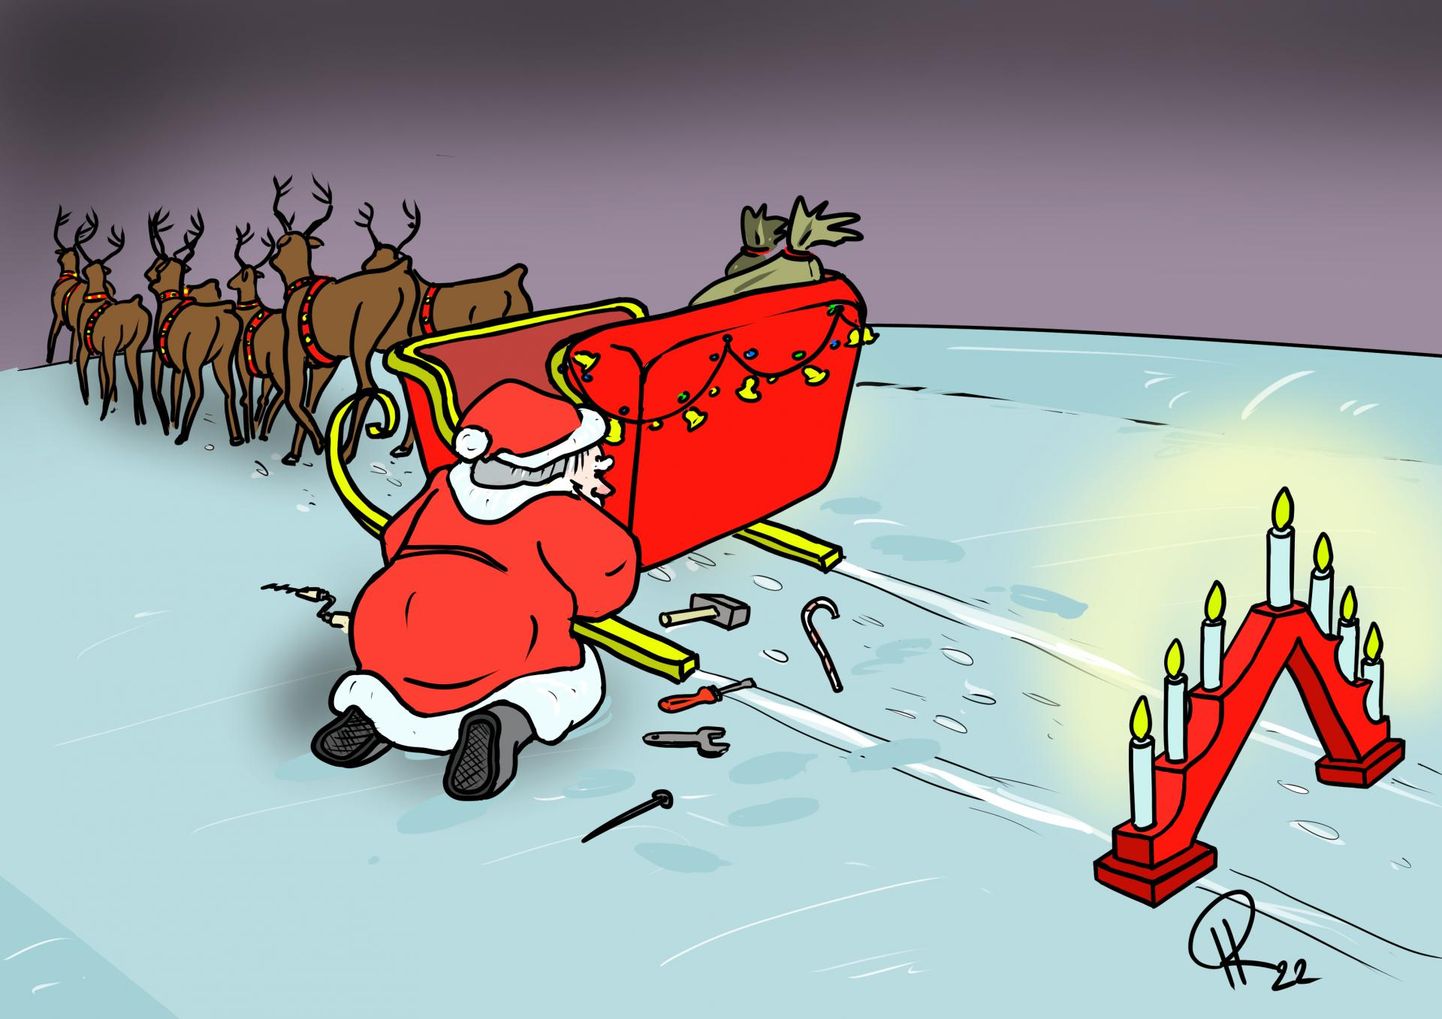 Nädala karikatuur "Jõuluvana tuleb".